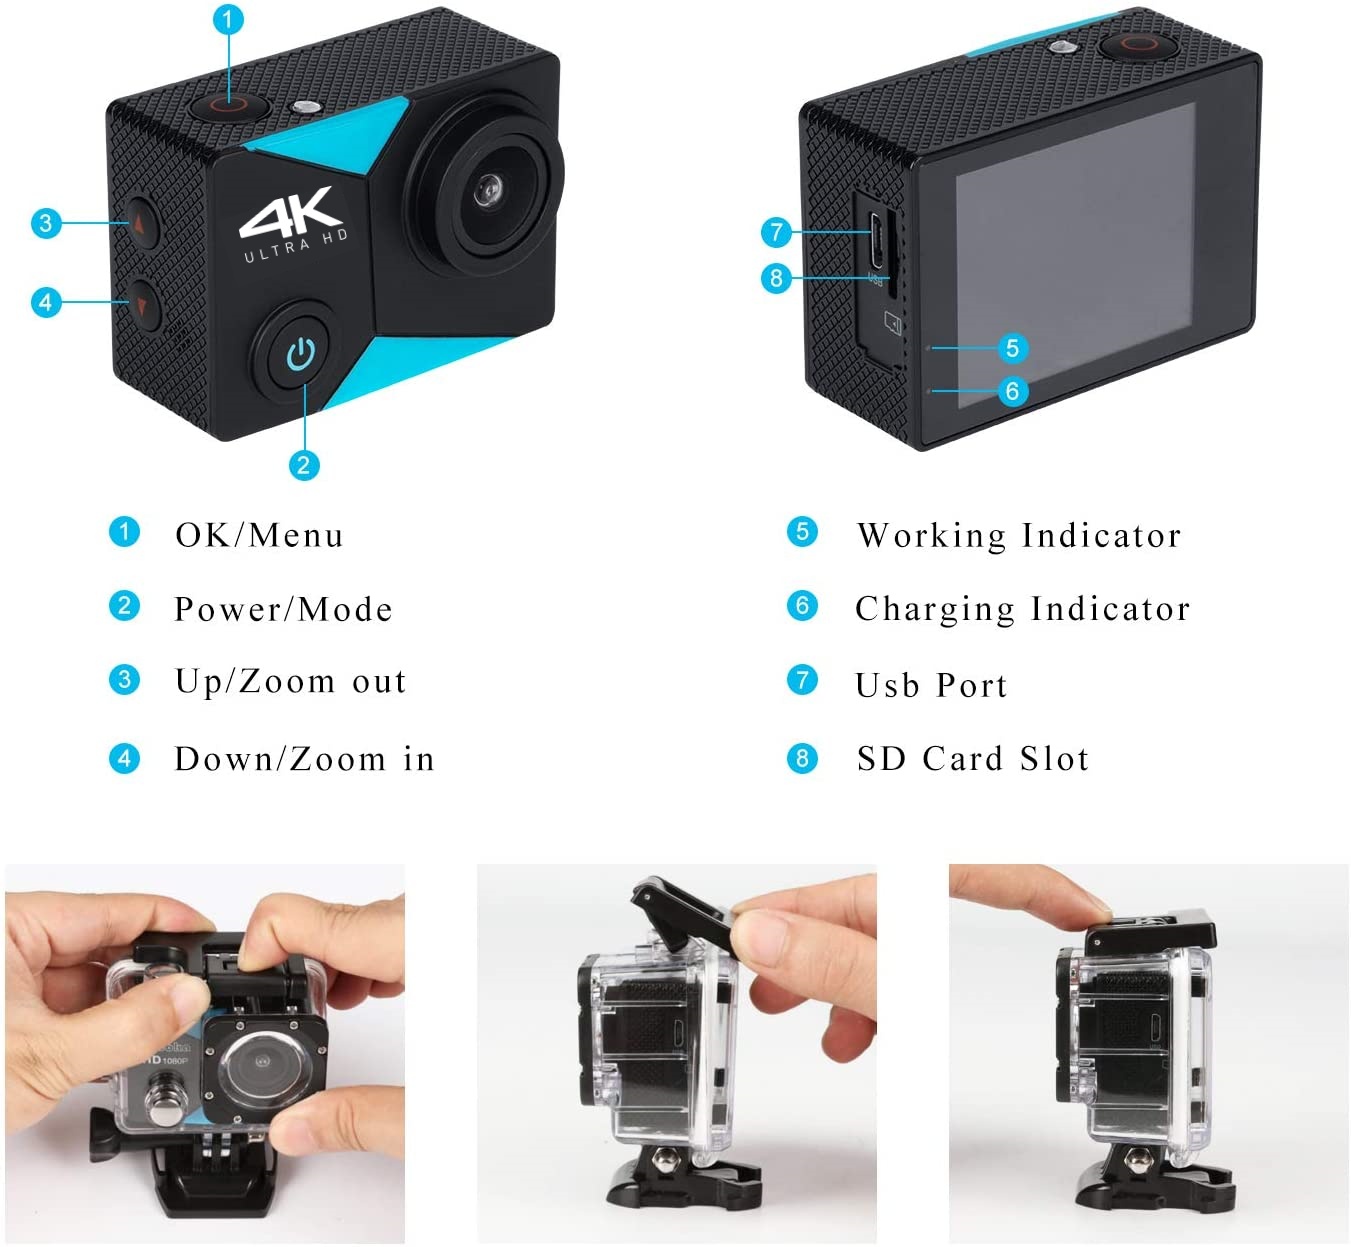 เกี่ยวกับสินค้า Nanotech กล้องกันน้ำ ถ่ายใต้น้ำ  มีระบบกันสั่นครบ 4K Ultra HD waterproof WIFI FREE Remote - สีดำ K80 2022 ล่าสุด แถมฟรี รีโมท+ไมค์ คุ้มที่สุด